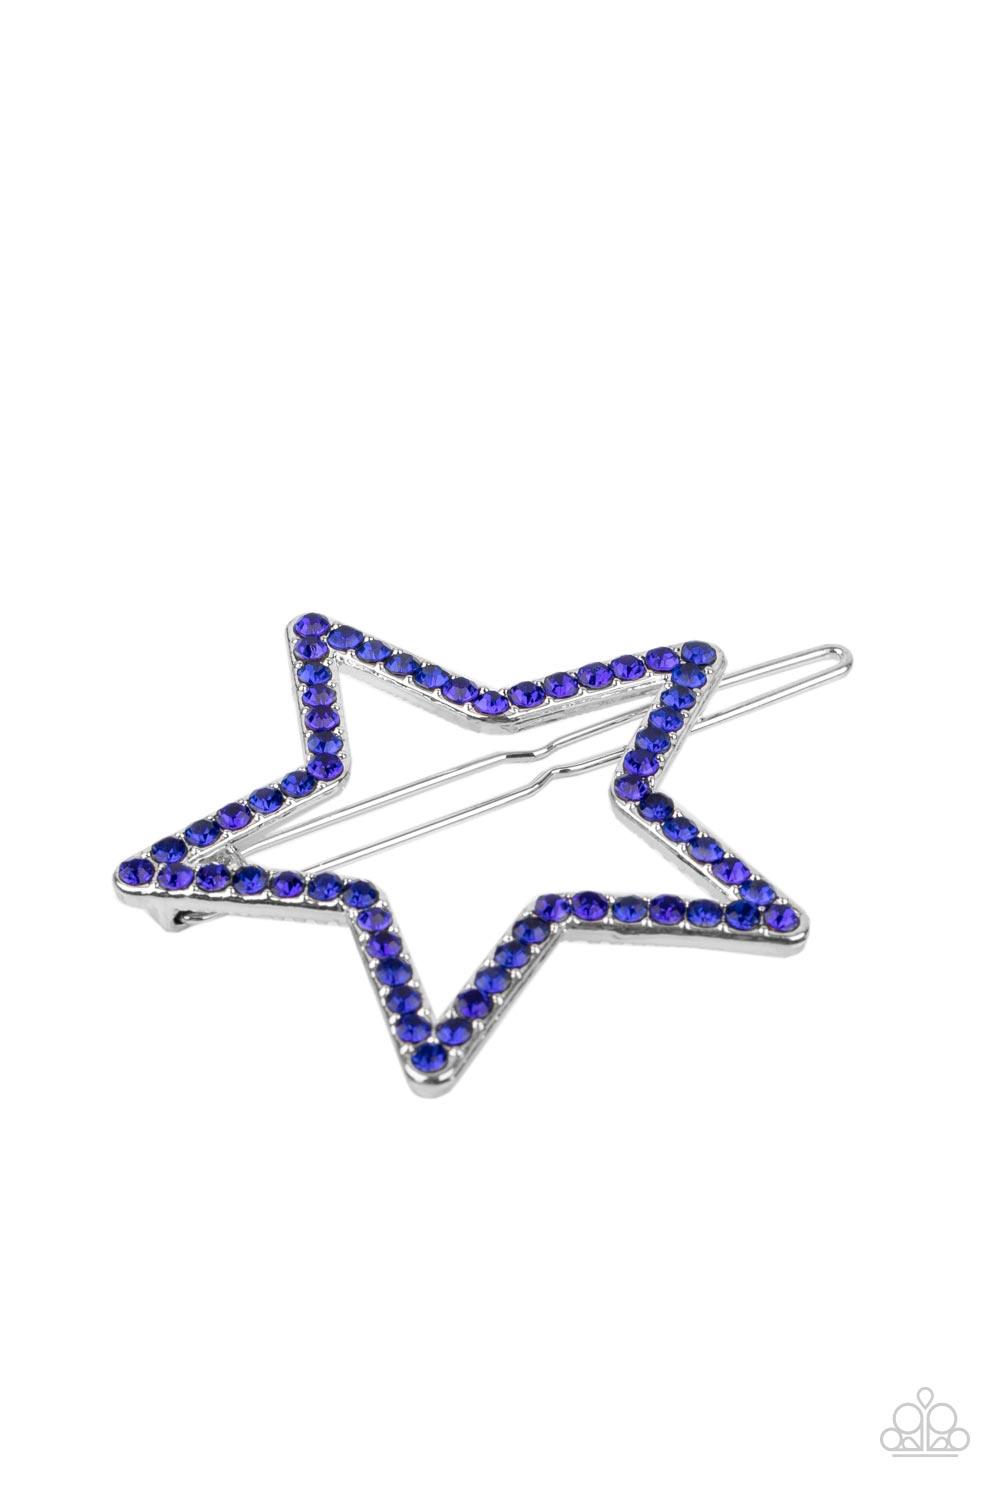 Stellar Standout - Blue Hair Clip